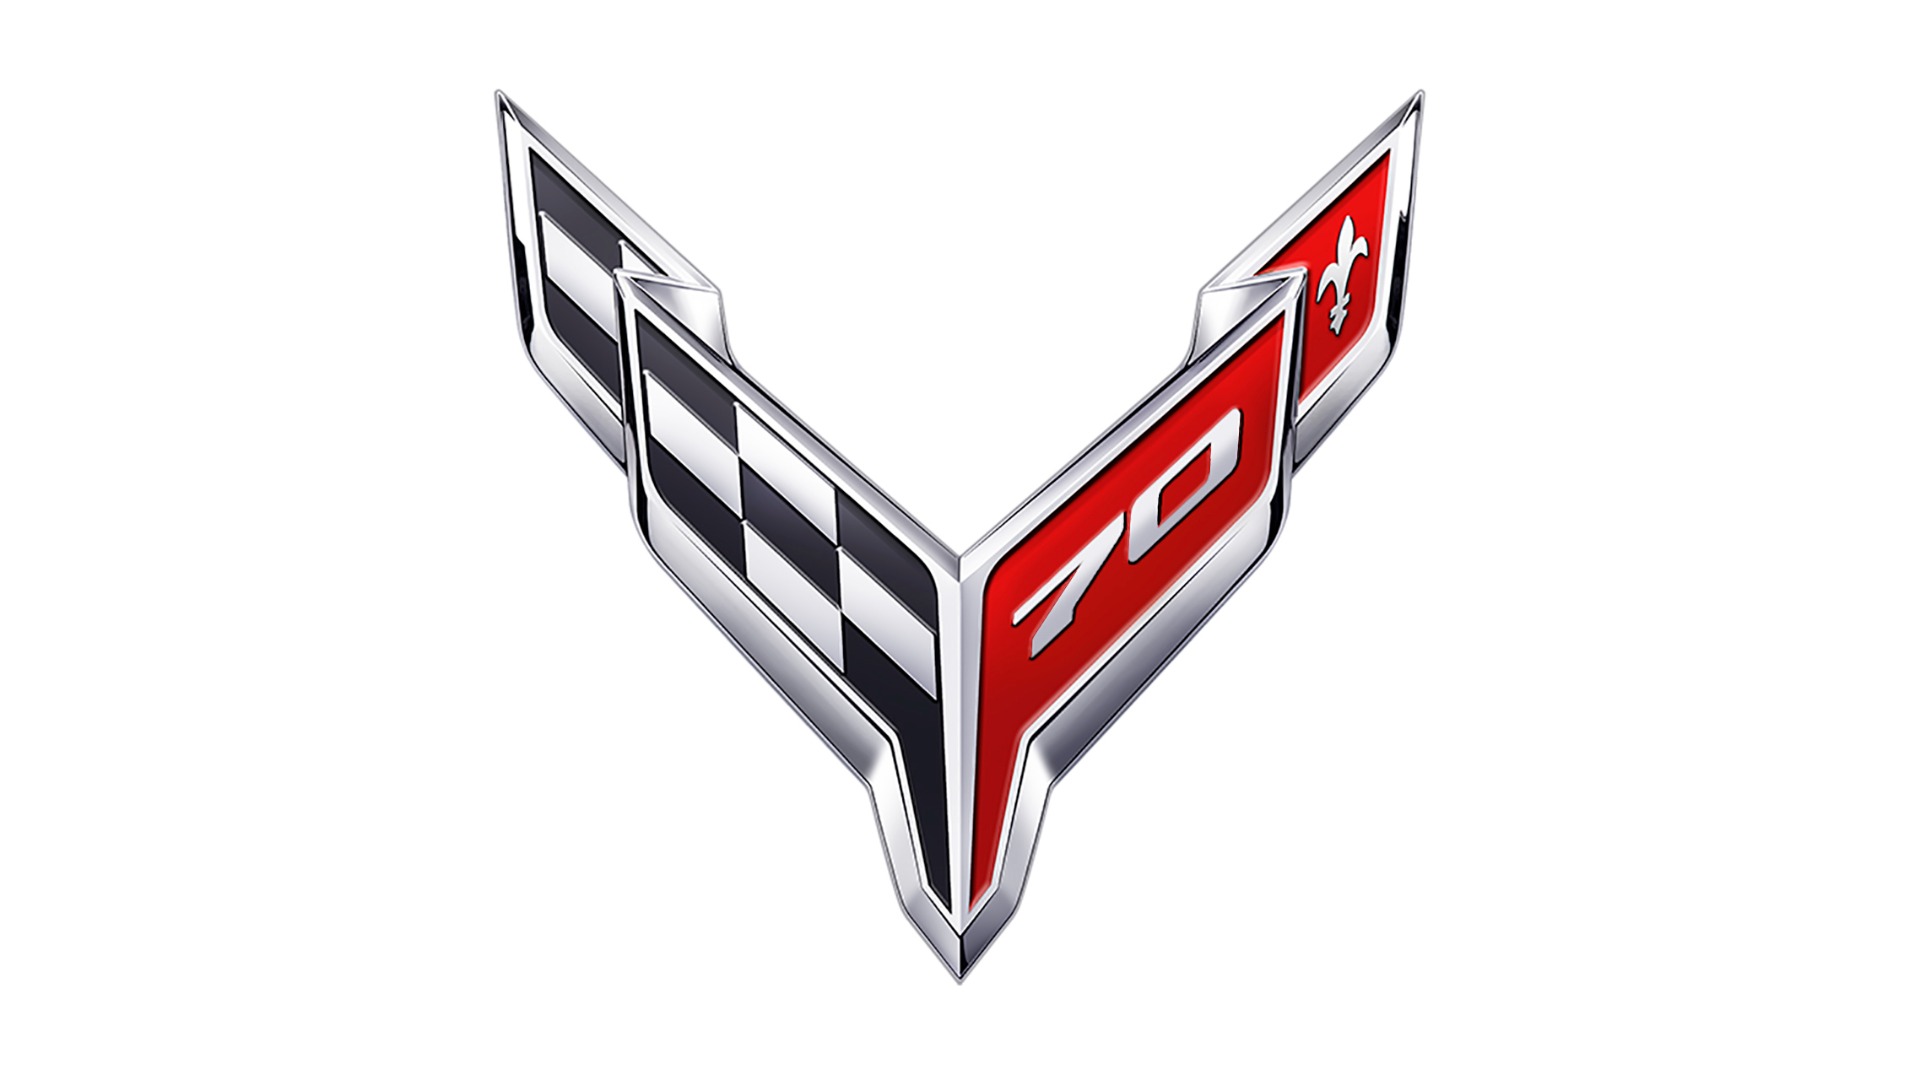 Corvette 70 logo.